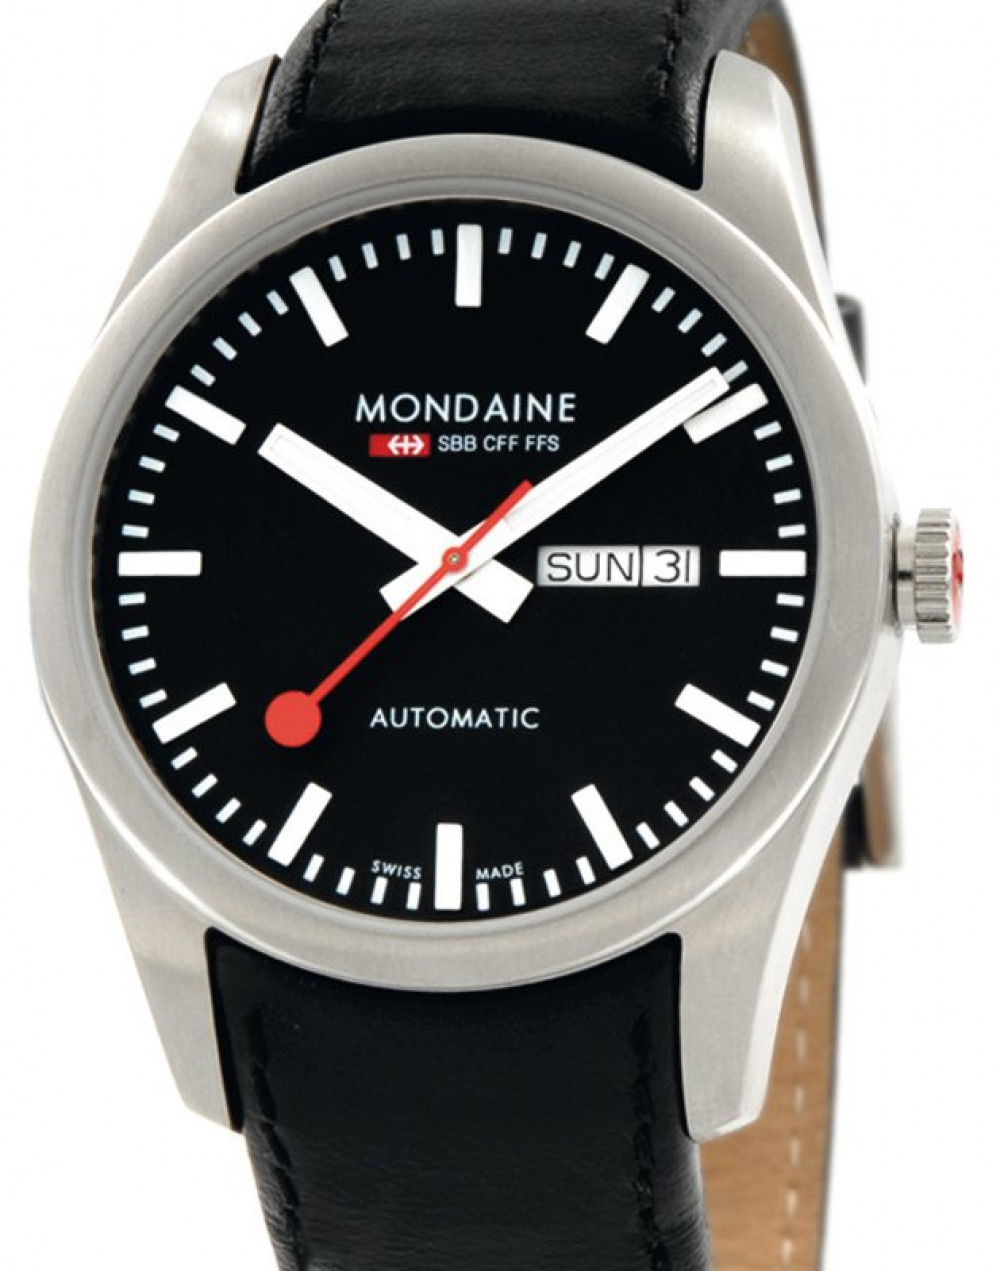 Zegarek firmy Mondaine Watch, model Retro Automatic